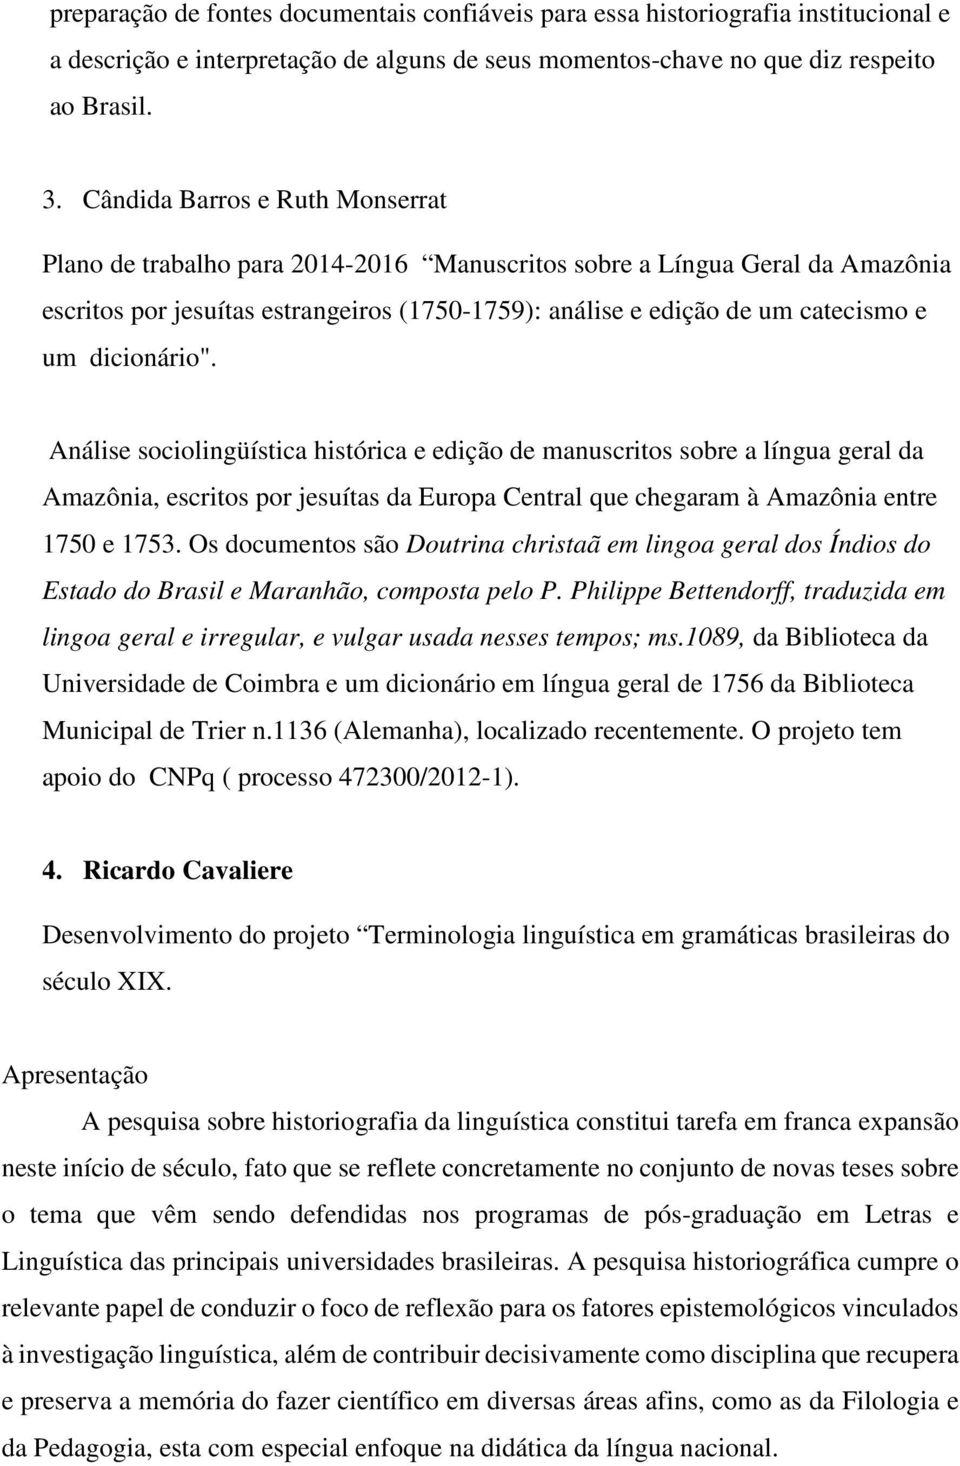 dicionário". Análise sociolingüística histórica e edição de manuscritos sobre a língua geral da Amazônia, escritos por jesuítas da Europa Central que chegaram à Amazônia entre 1750 e 1753.